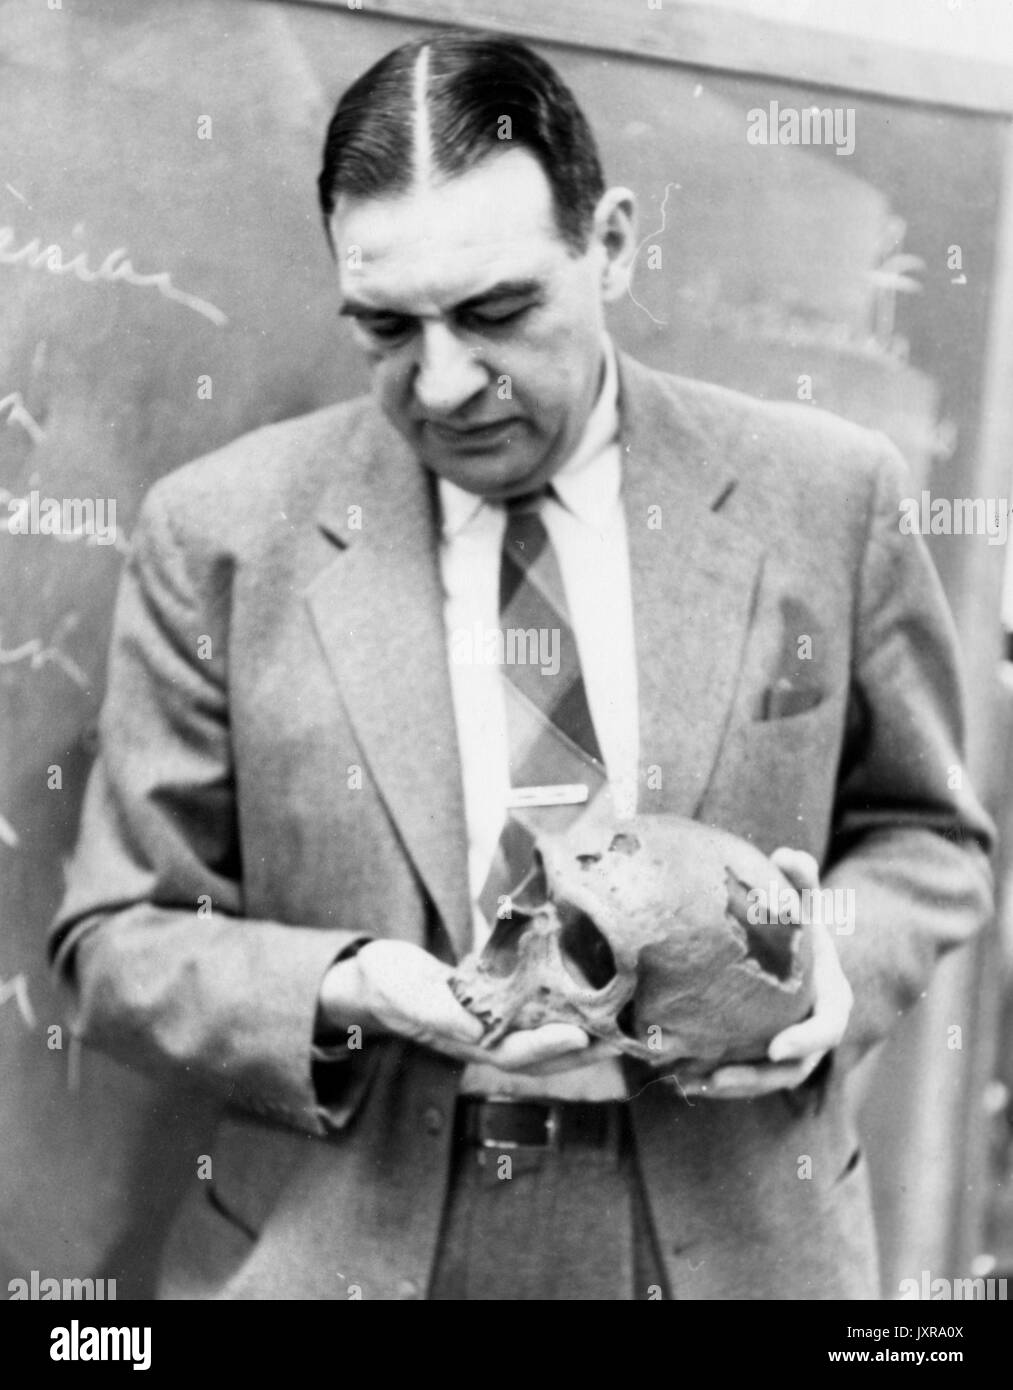 Antropologia, Scienza, teschi Candid shot, un professore non identificato è in possesso di un cranio, 1950. Foto Stock